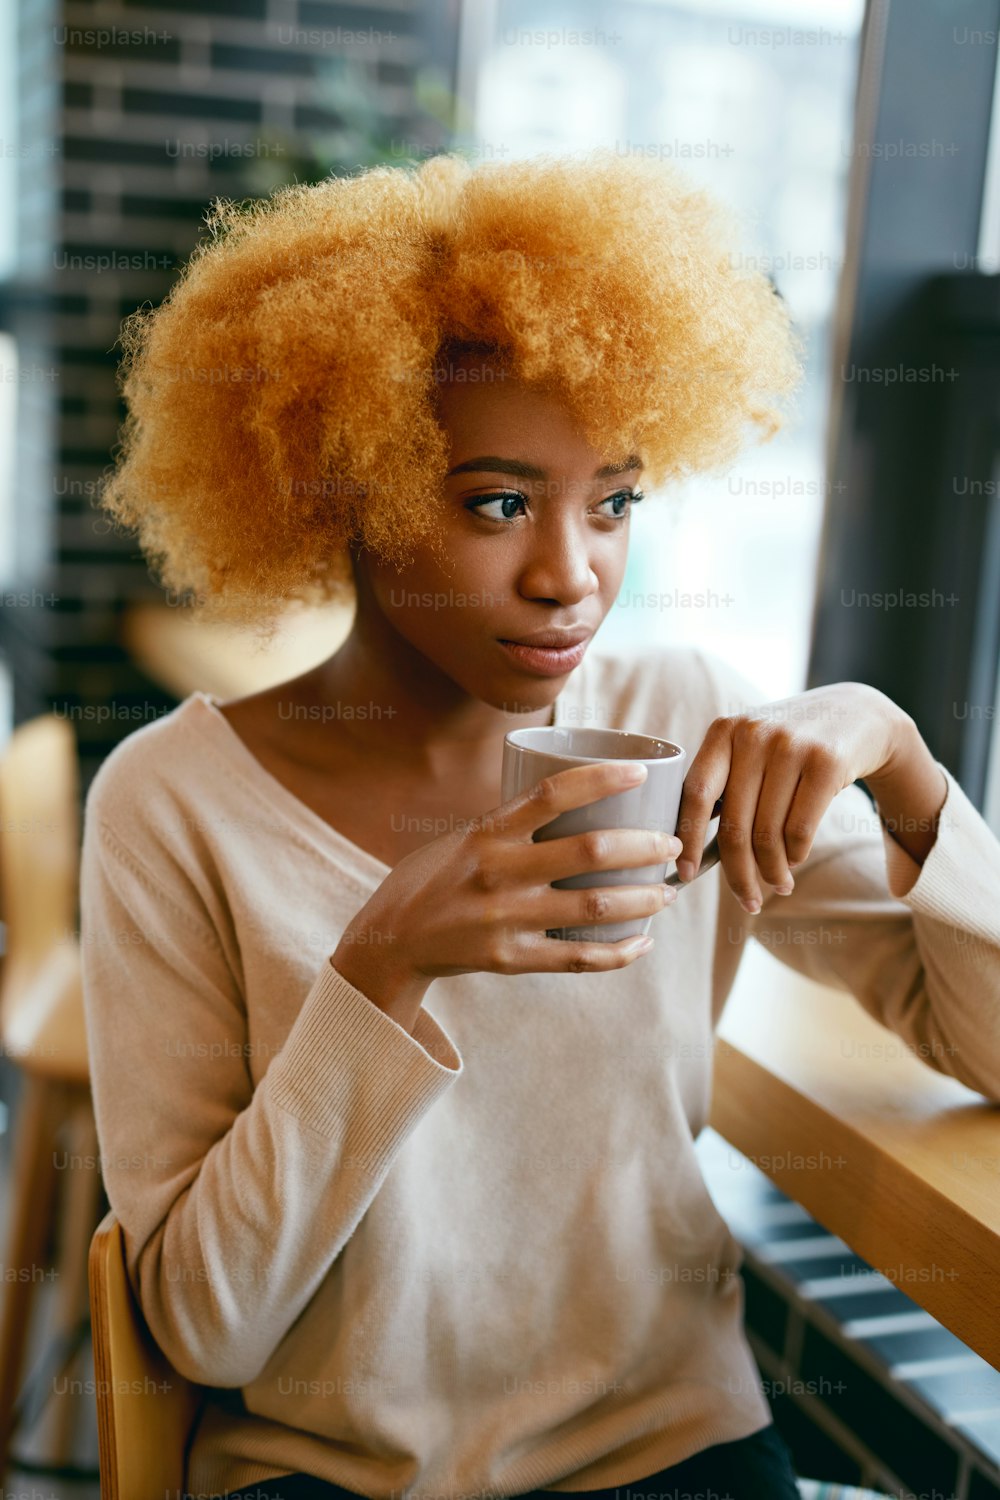 Belle fille buvant du café dans un café près de la fenêtre. Portrait De Jeune Femme Africaine Souriante En Vêtements Décontractés Avec Cu0p De Boisson Chaude Dans Un Café. Haute résolution